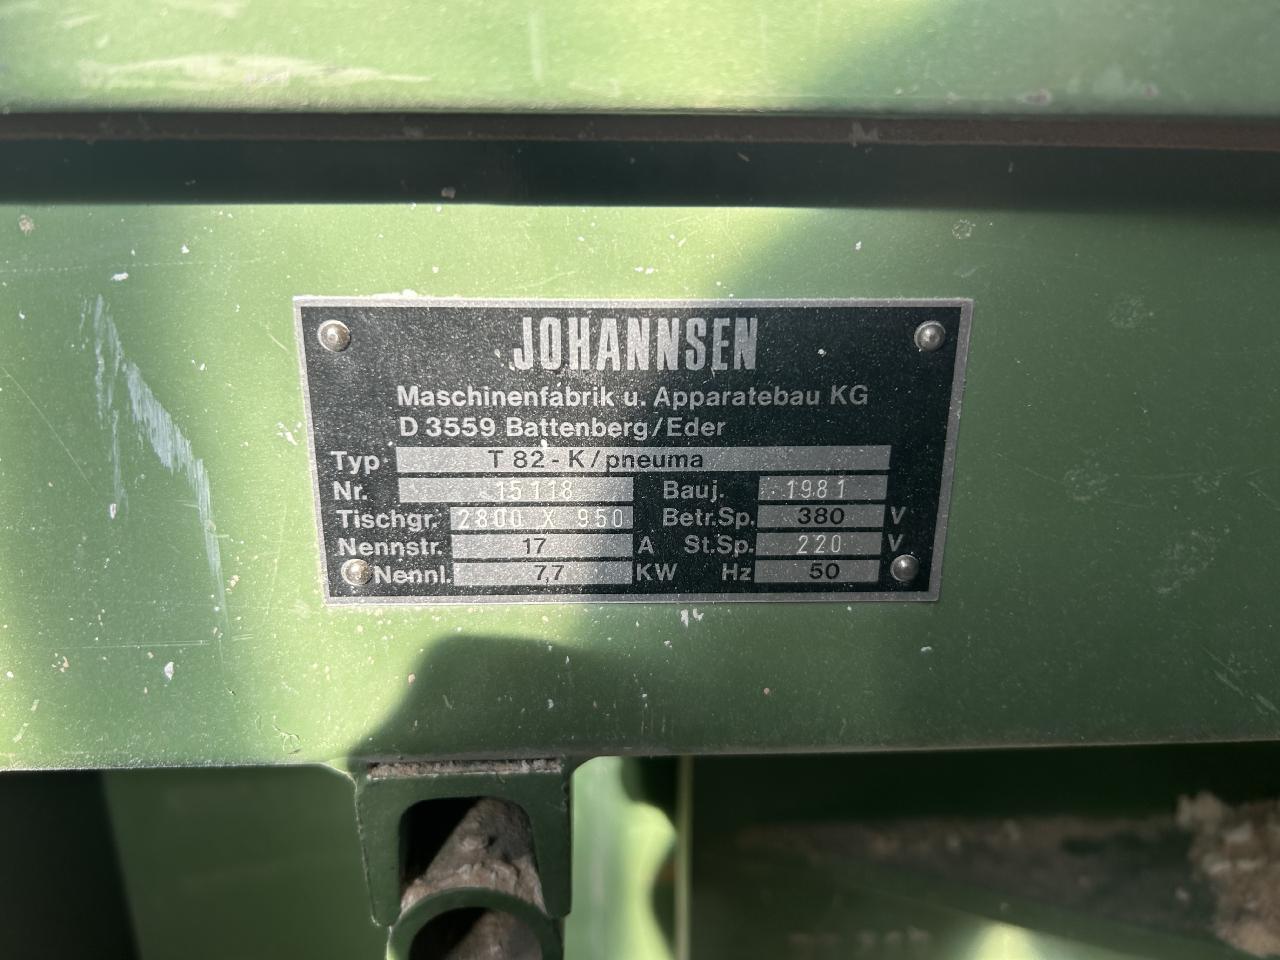 Johannsen T 82-K pneuma